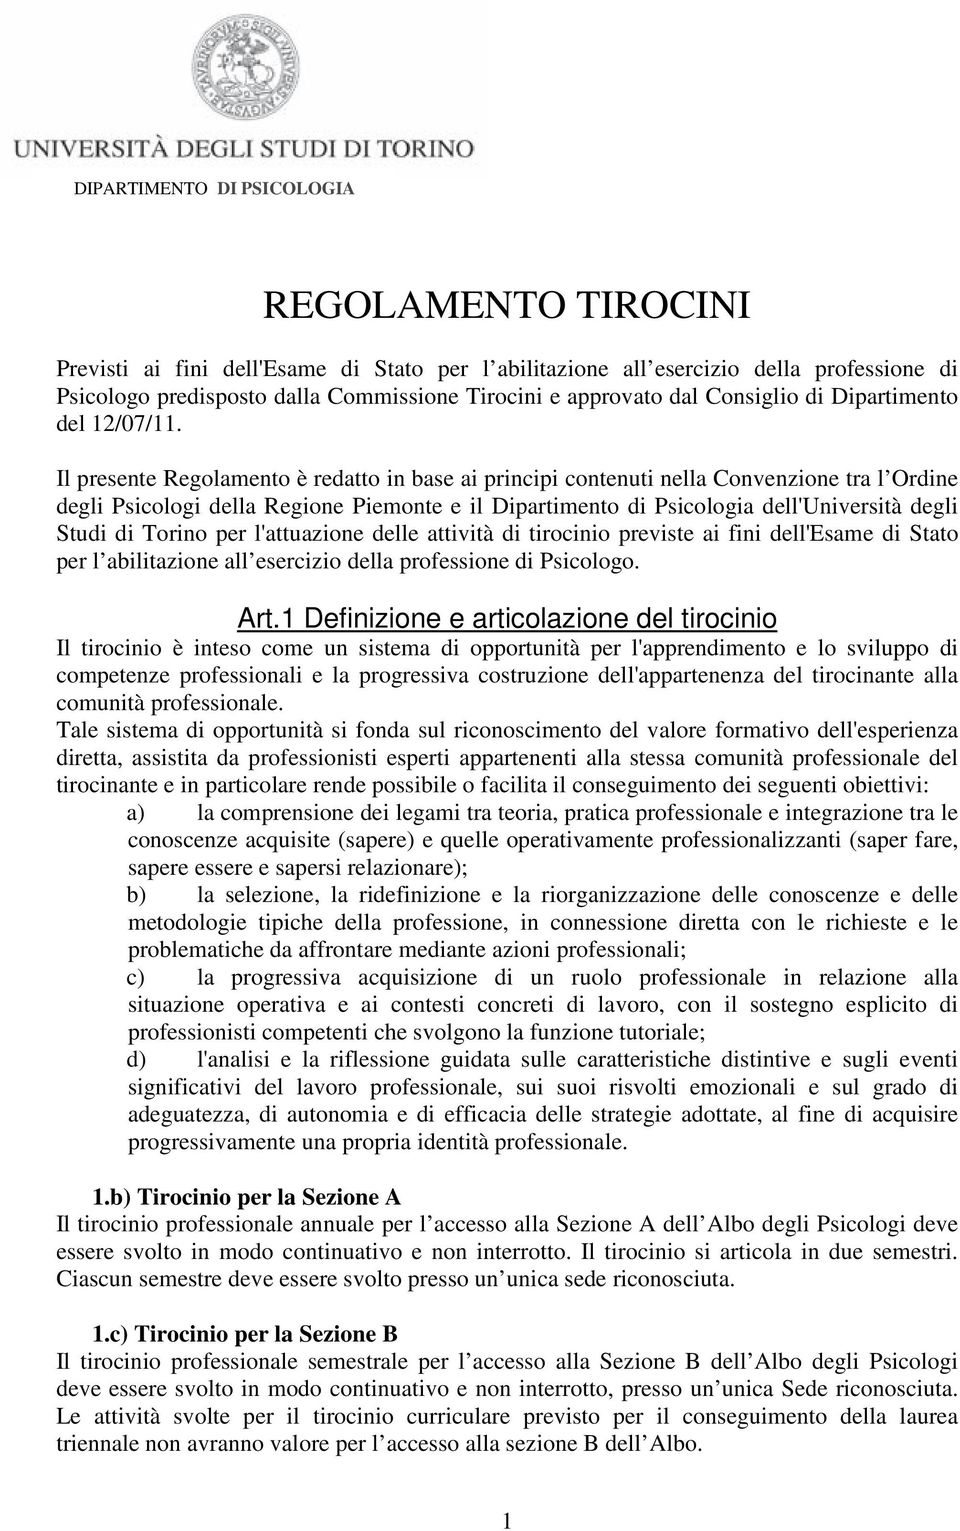 Il presente Regolamento è redatto in base ai principi contenuti nella Convenzione tra l Ordine degli Psicologi della Regione Piemonte e il Dipartimento di Psicologia dell'università degli Studi di